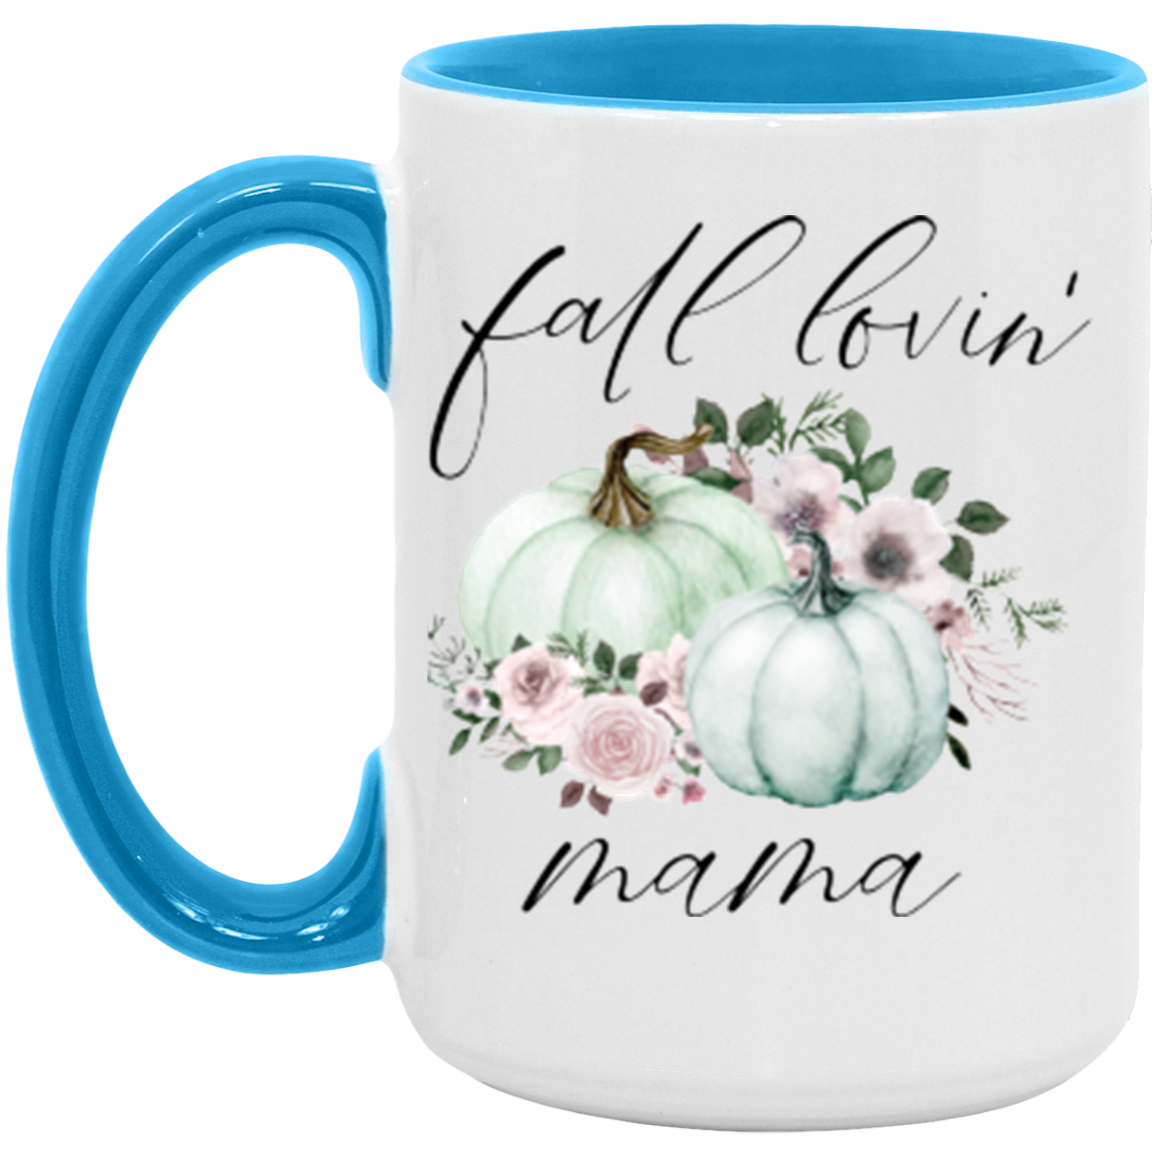 Fall Lovin' Mama Mug